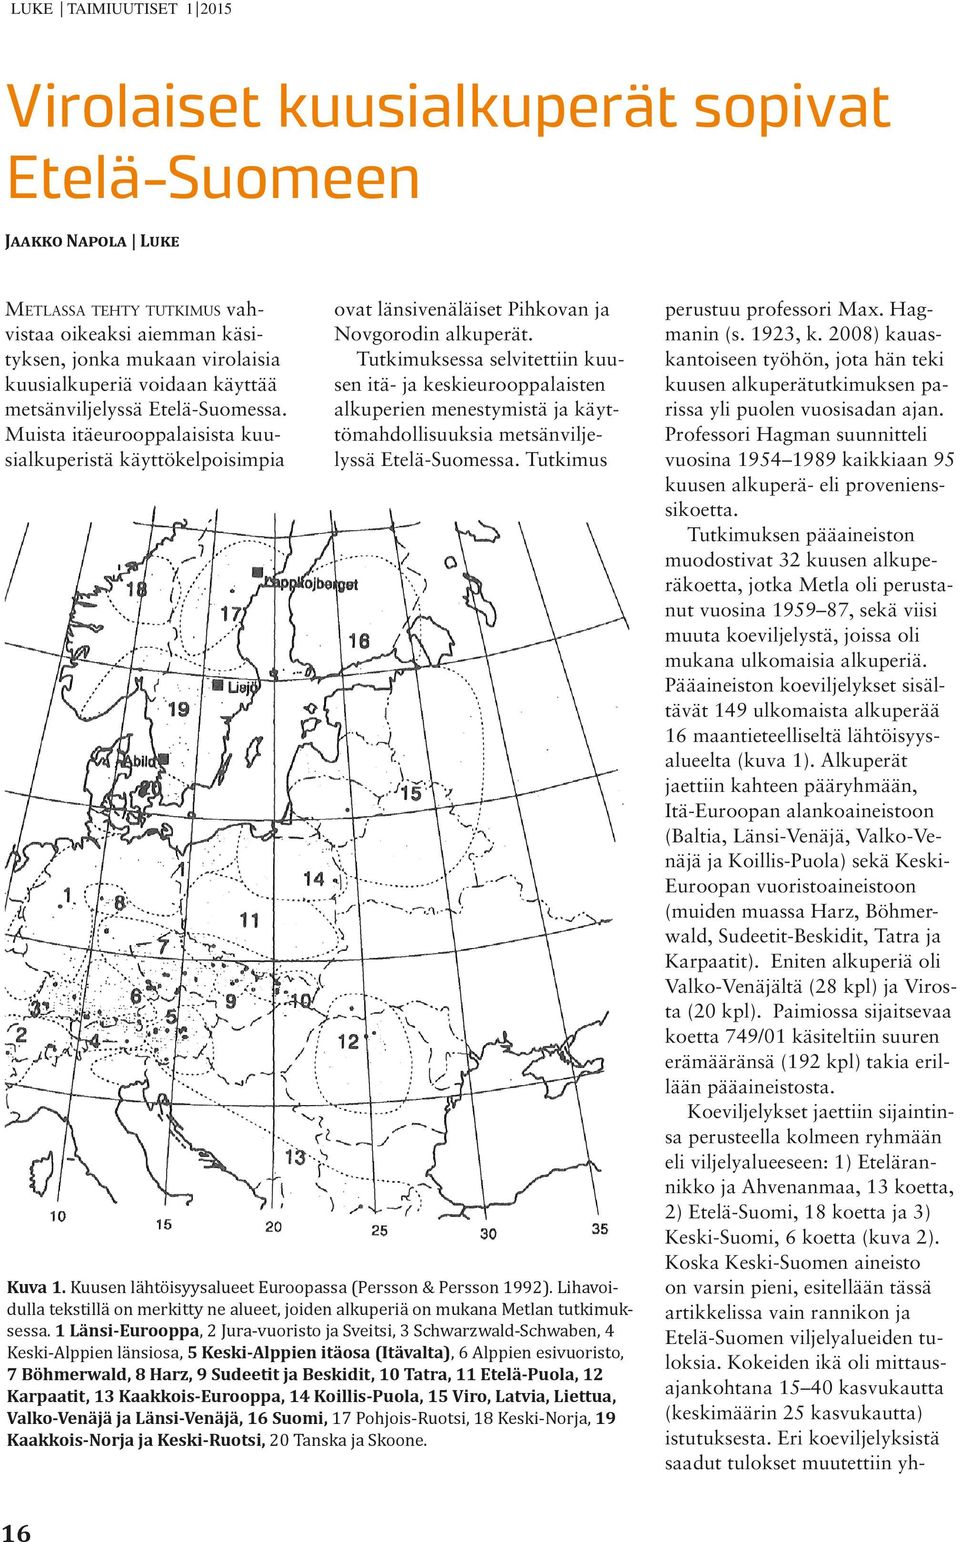 Tutkimuksessa selvitettiin kuusen itä- ja keskieurooppalaisten alkuperien menestymistä ja käyttömahdollisuuksia metsänviljelyssä Etelä-Suomessa. Tutkimus Kuva 1.